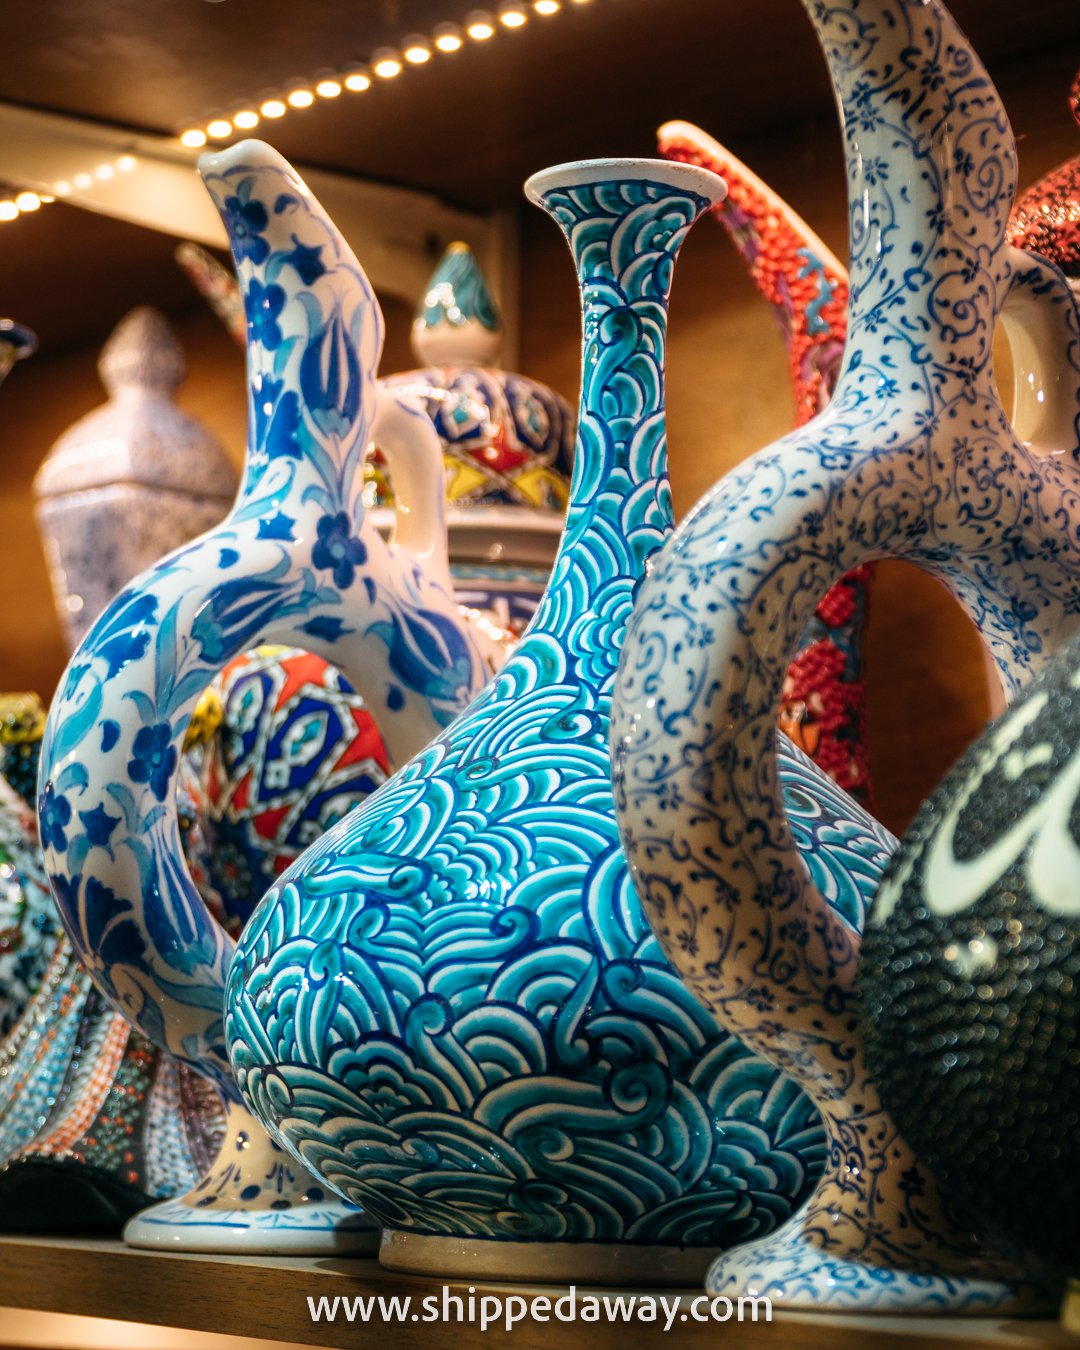 Vases and ceramics, Grand Bazaar, Istanbul, Turkey